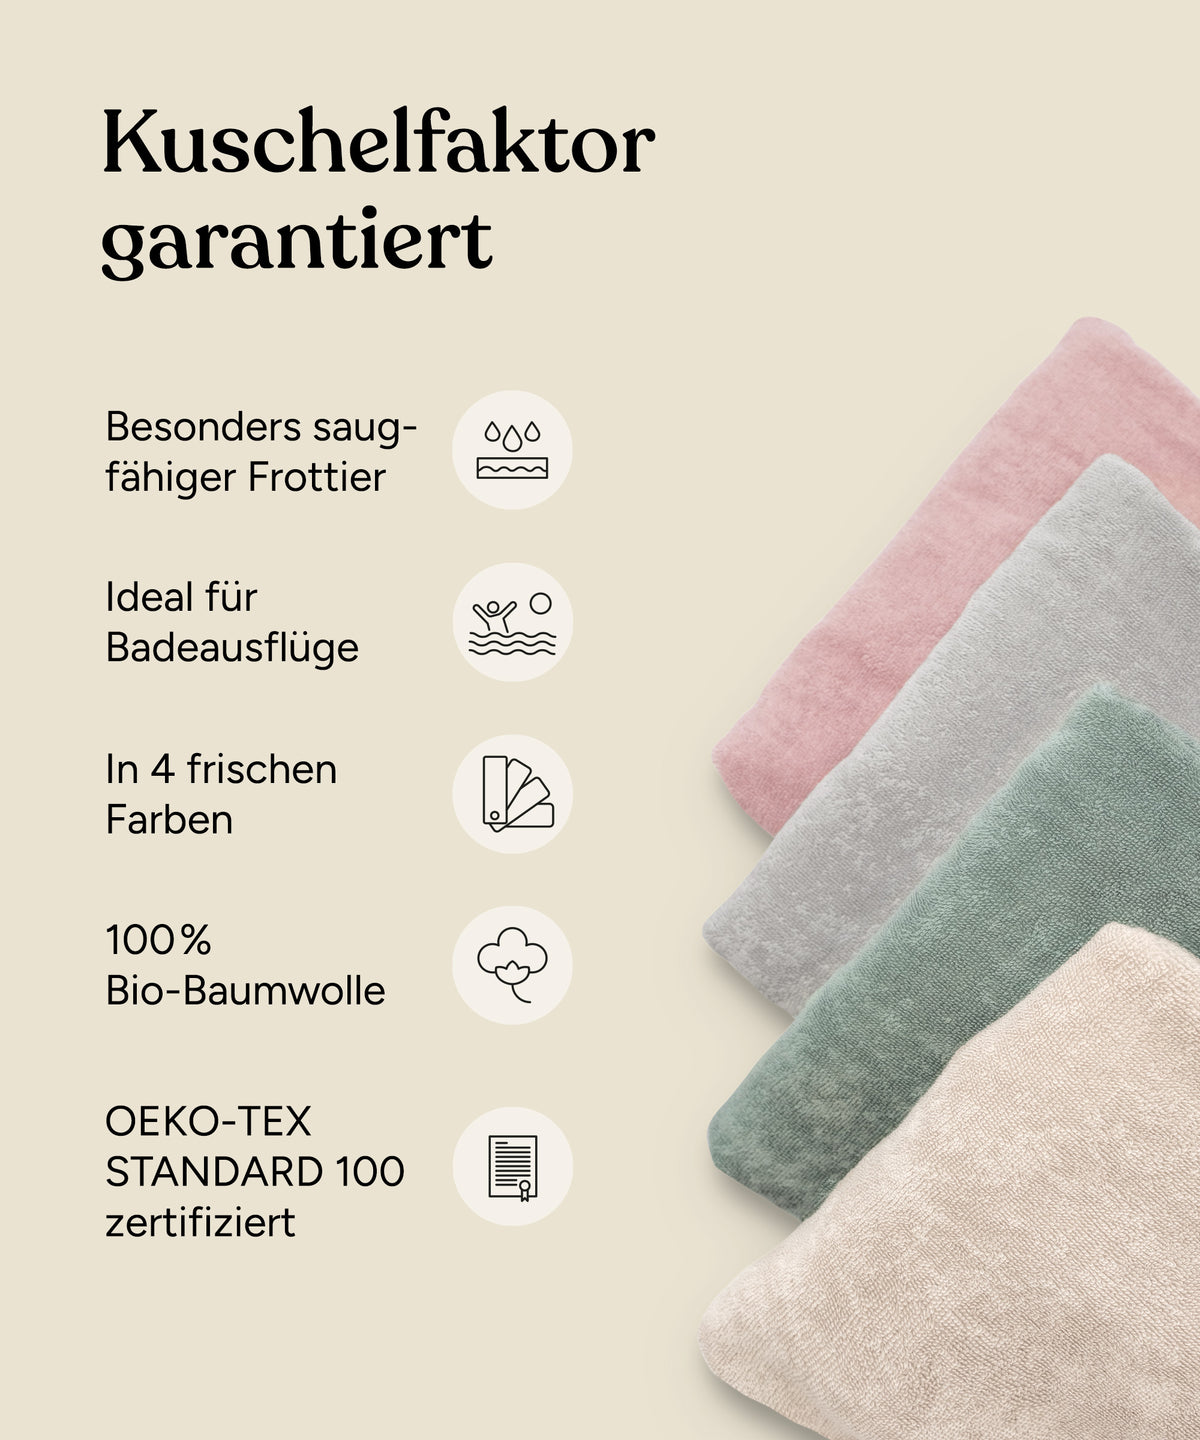 Vorteile Badeponcho: Besonders saugfähiger Frottier, ideal für Badeausflüge, in 4 frischen Farben, 100 % Bio-Baumwolle, Oeko-Tex Standard 100 zertifiziert.